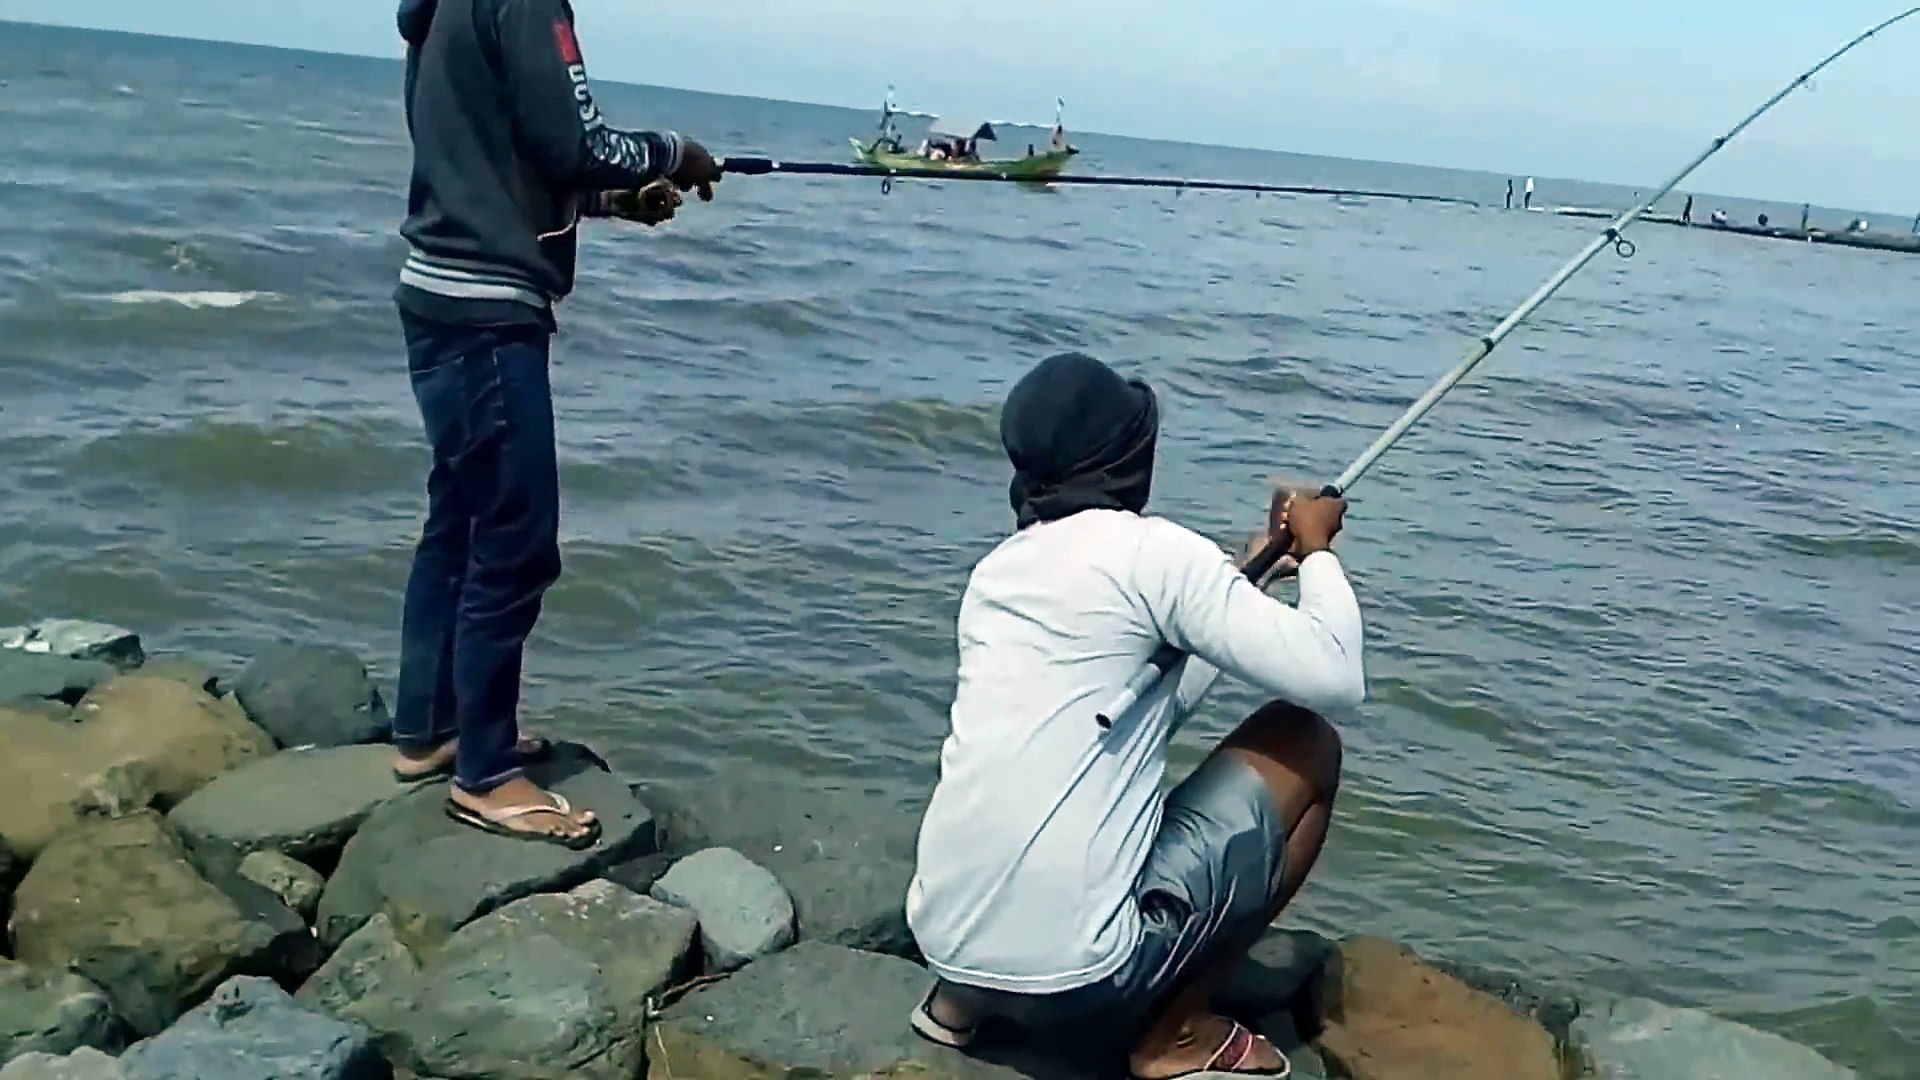 Mancing Ikan Laosan Moster Video Dailymotion